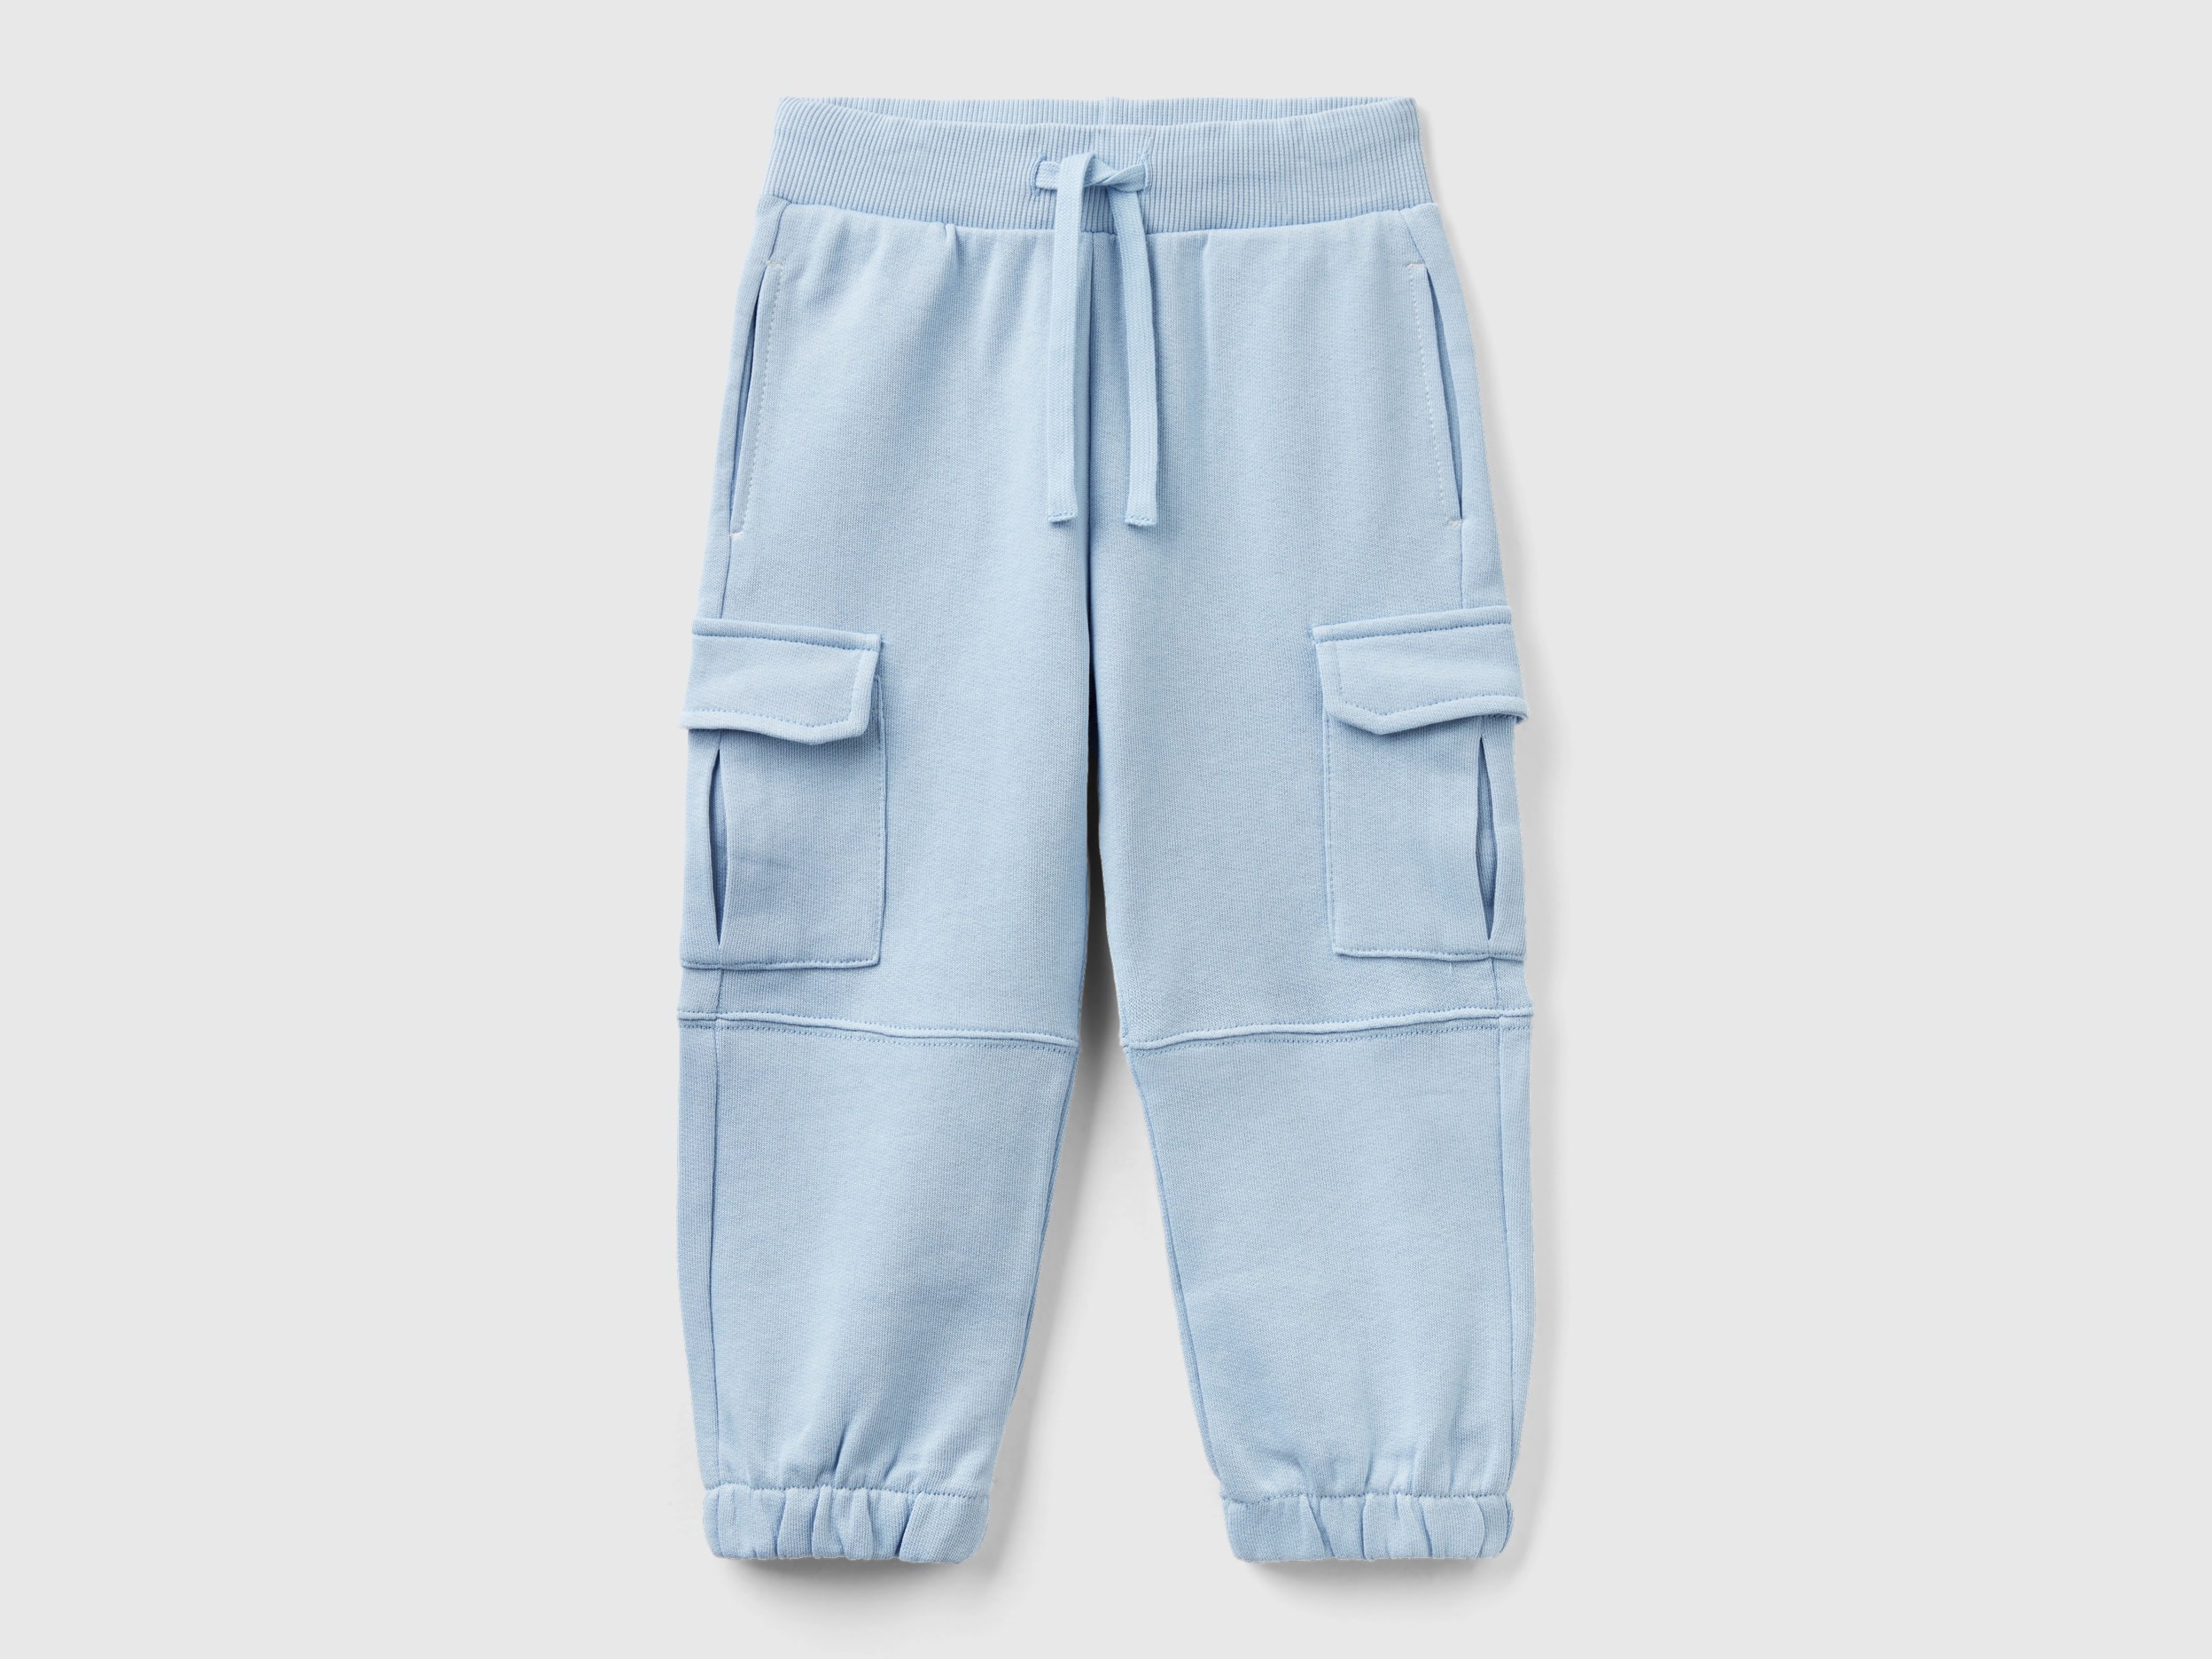 Benetton, Sweat Cargo Pants, size 5-6, Sky Blue, Kids